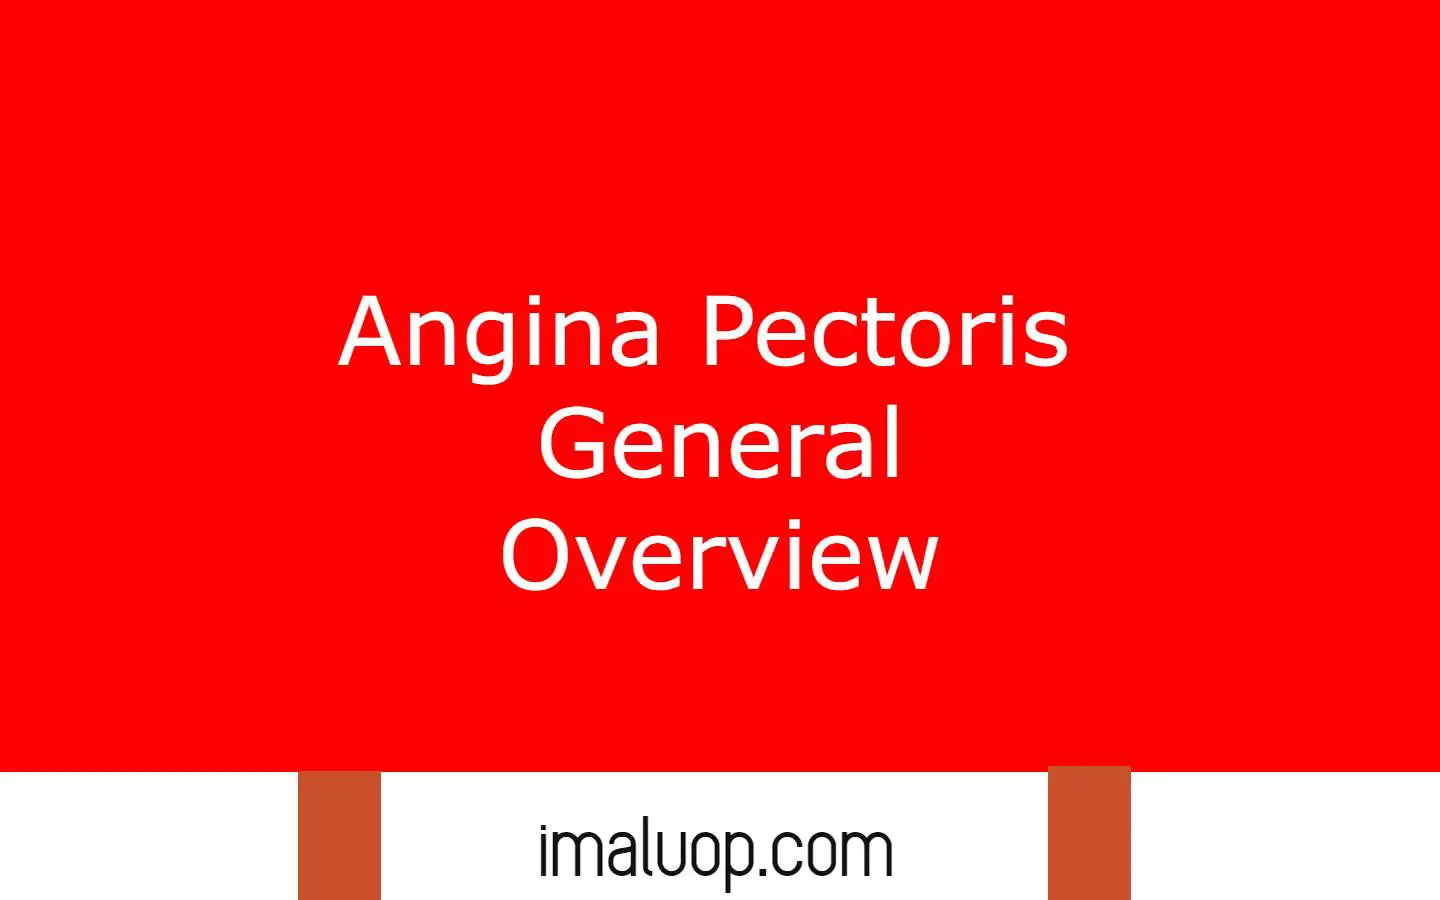 Angina Pectoris General Overview